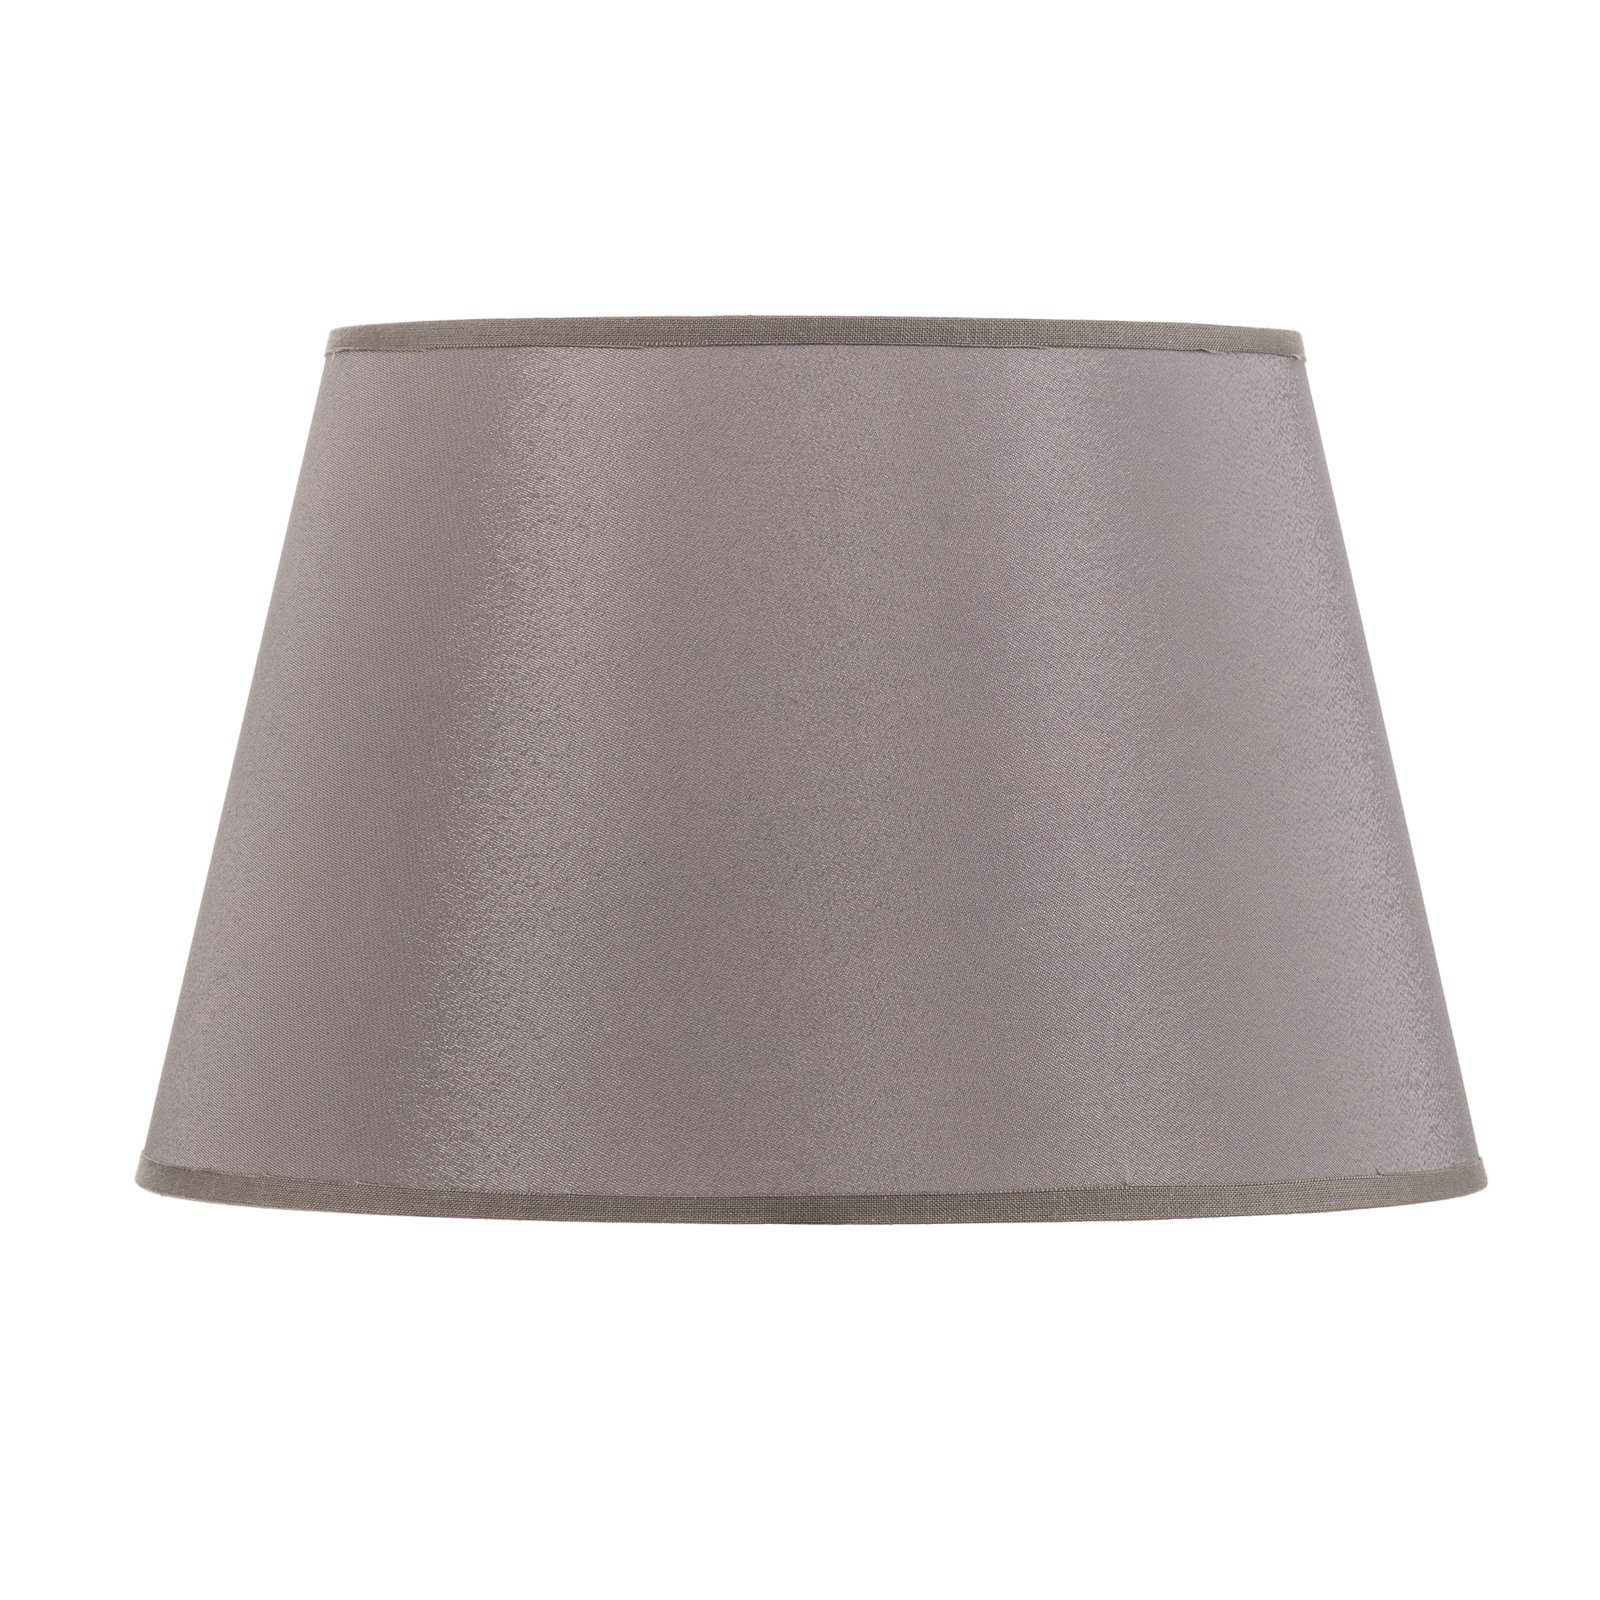 Lampeskjerm Cone høyde 18 cm, chintz grå/hvit